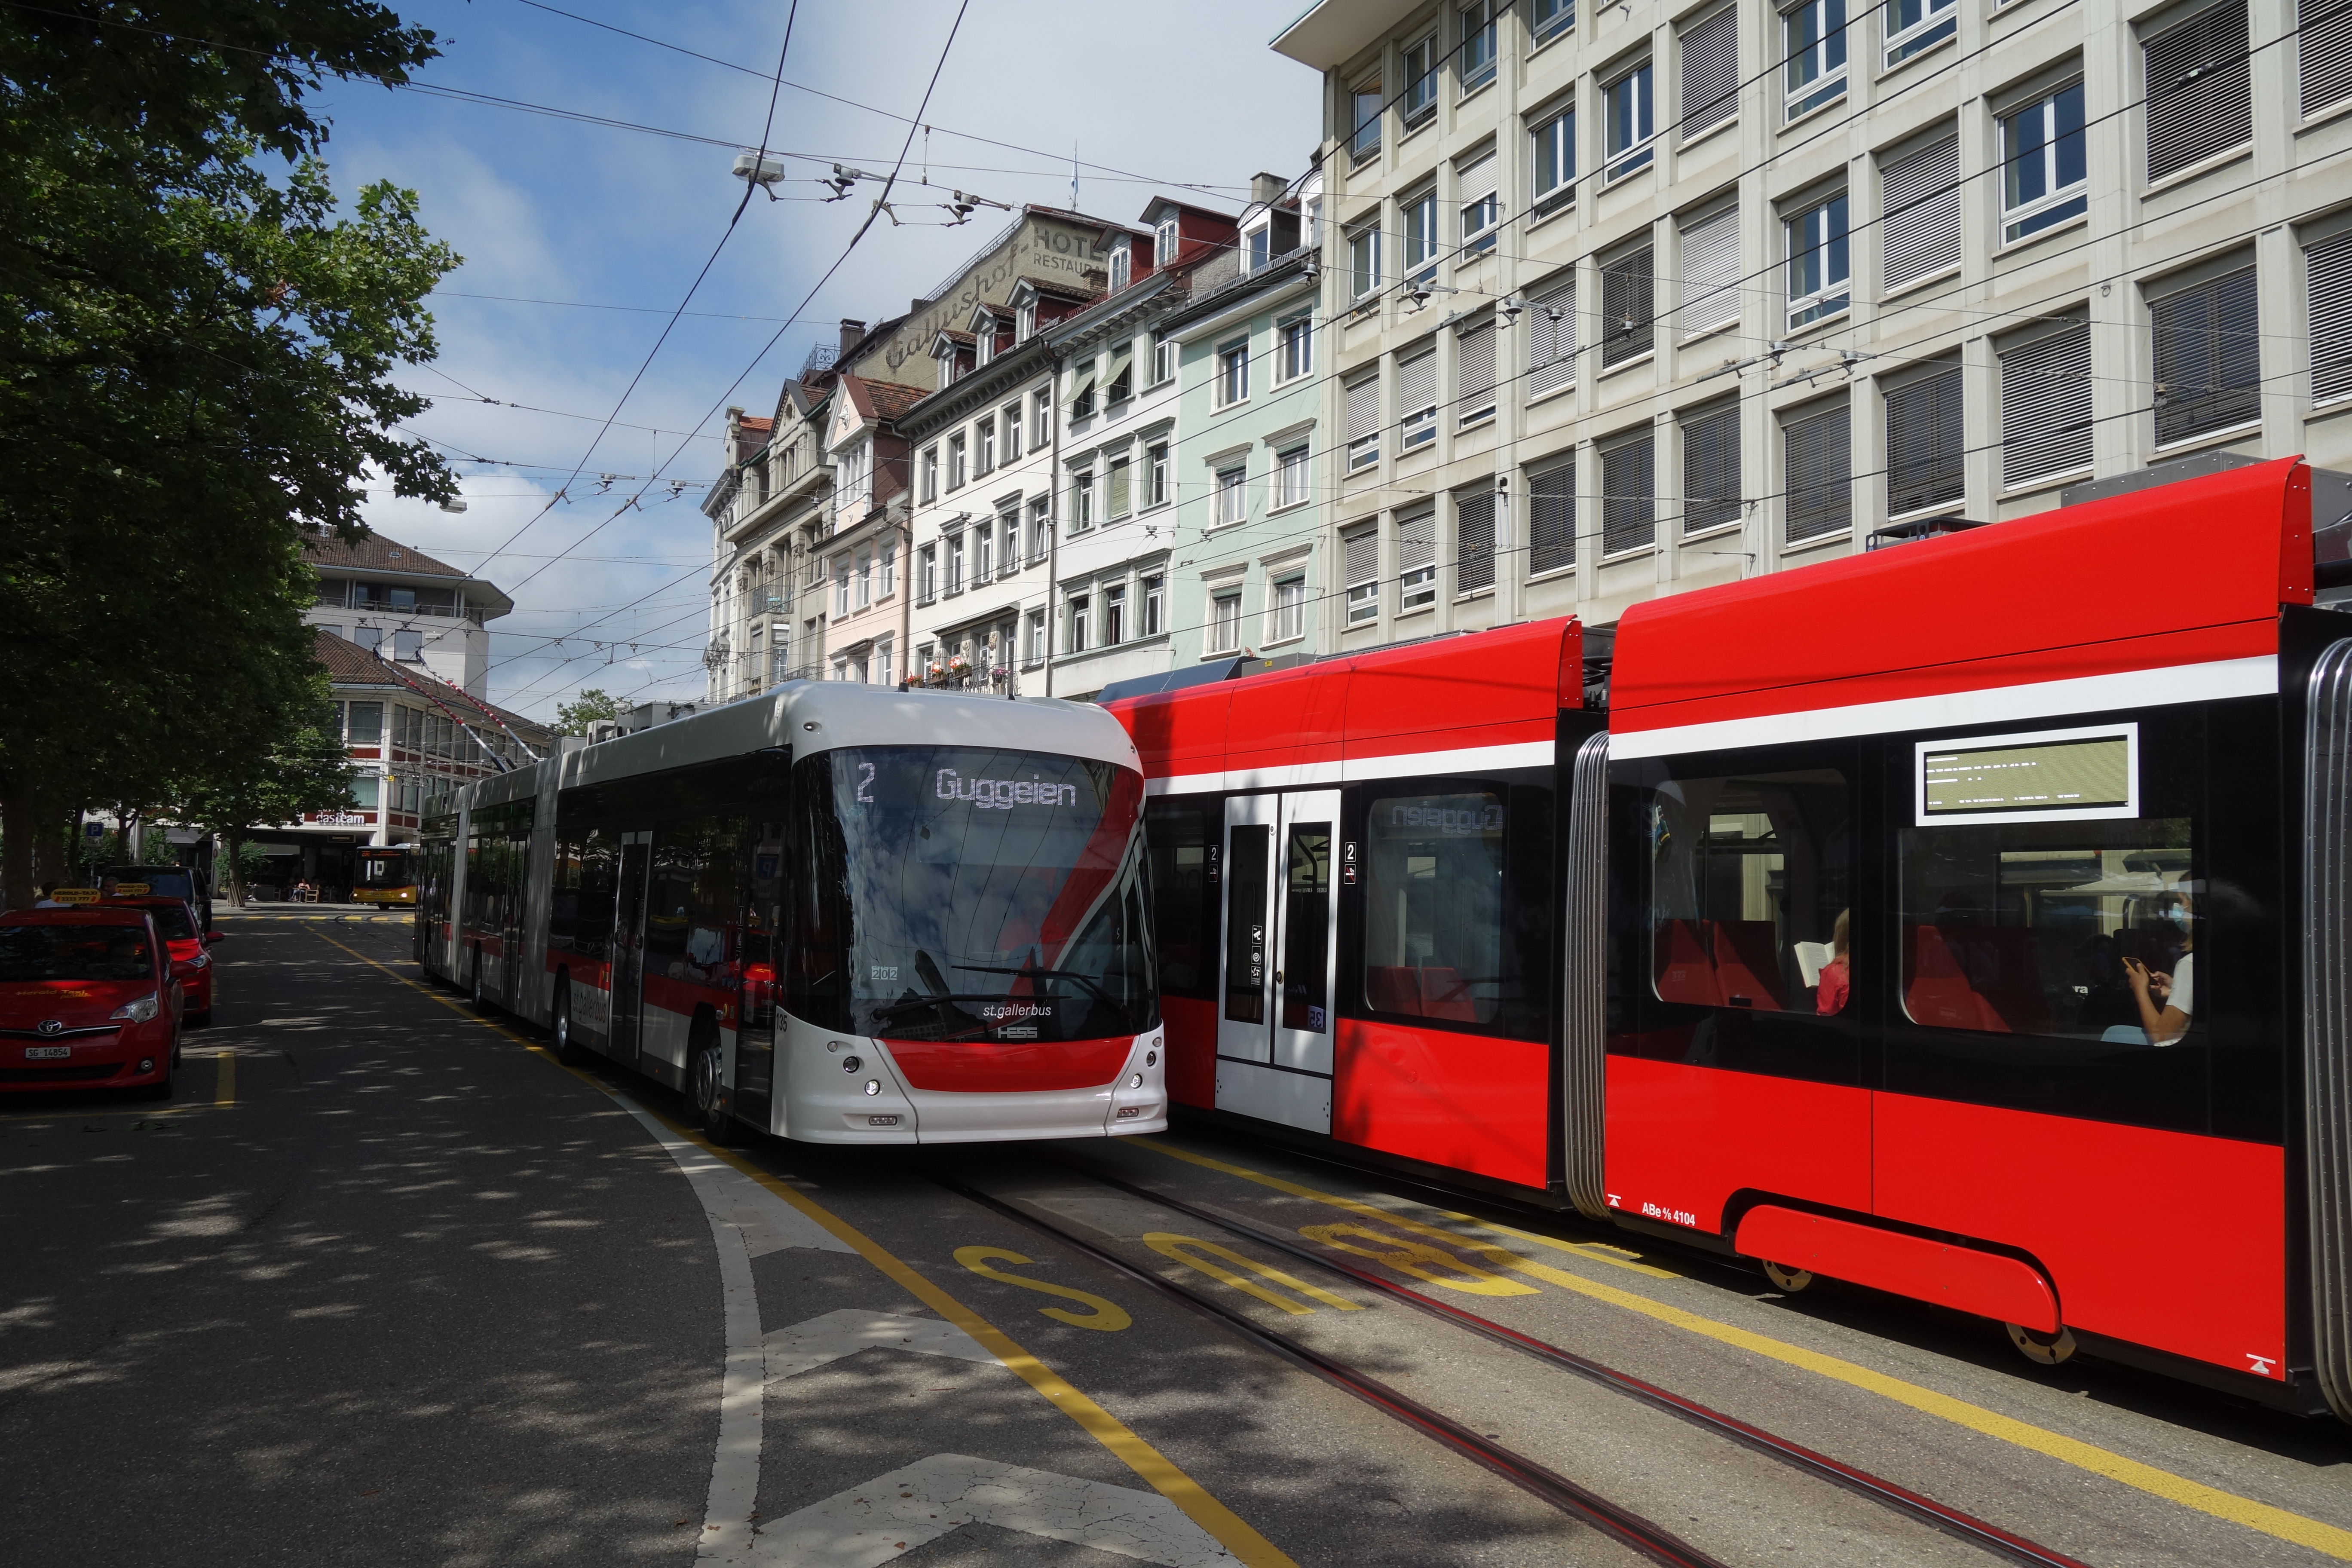 Vyhrazený jízdní pruh pro autobusy a trolejbusy na tramvajových kolejích